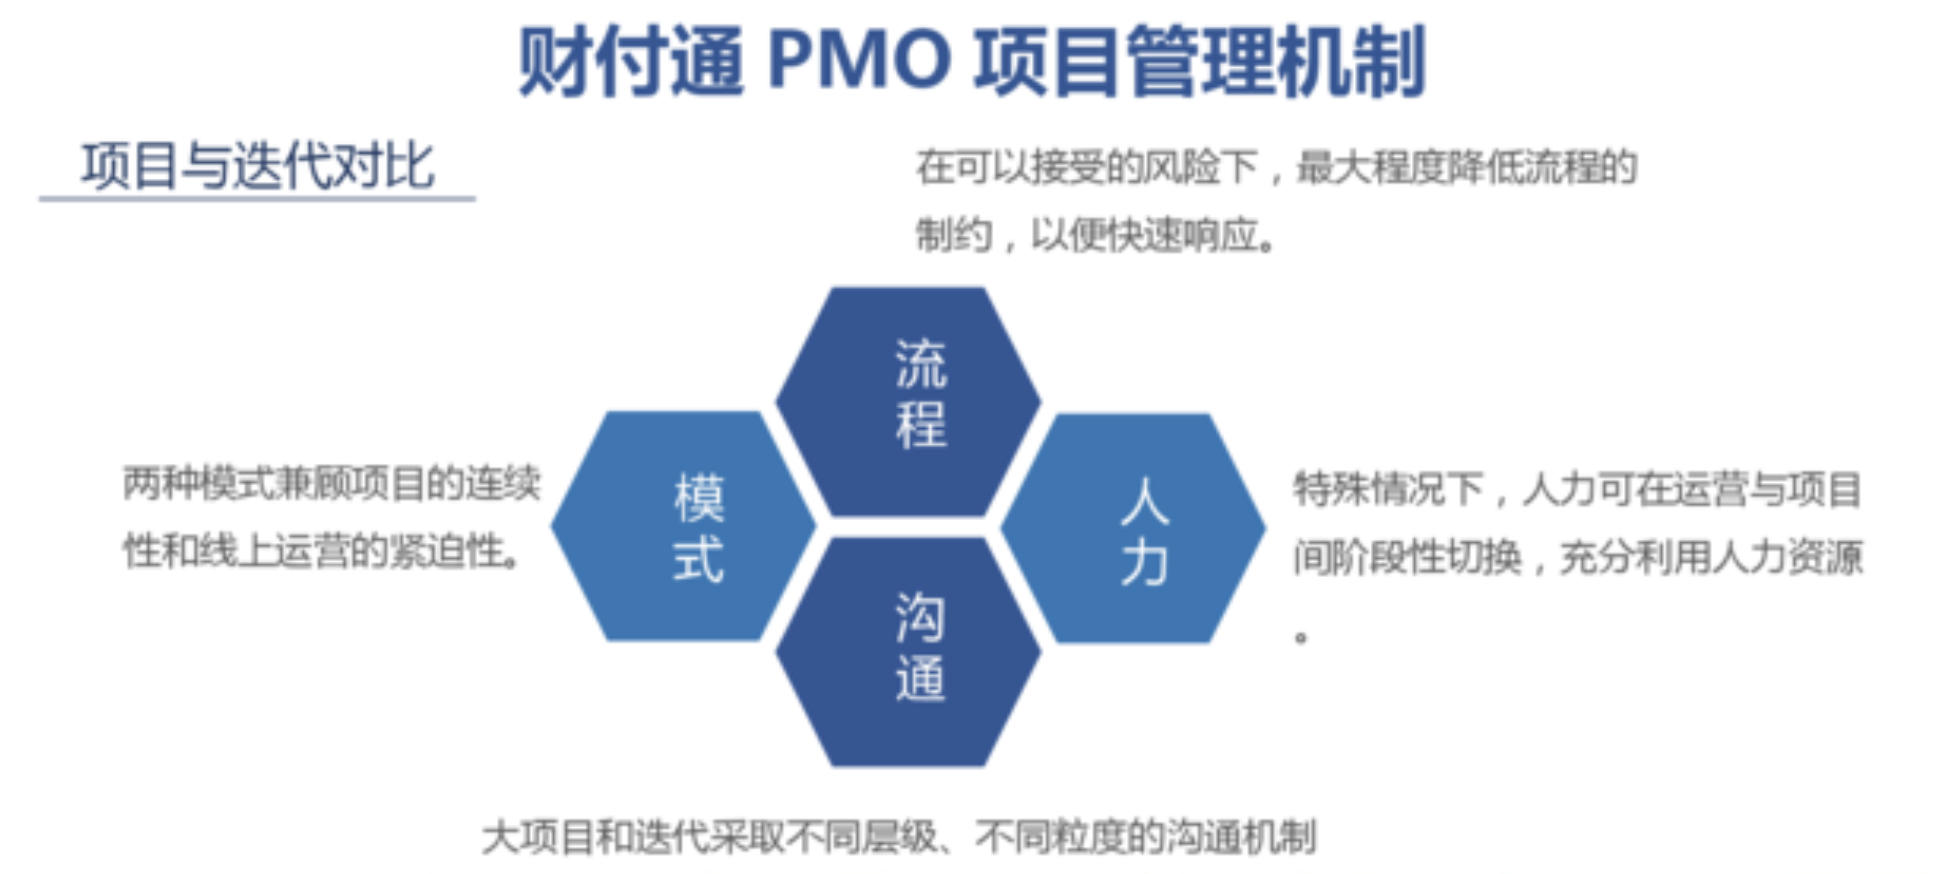 MPD：财付通——标准化项目管理与敏捷迭代的兼得——互联网PMO与项目管理实践  项目管理 管理 产品经理 产品 第4张